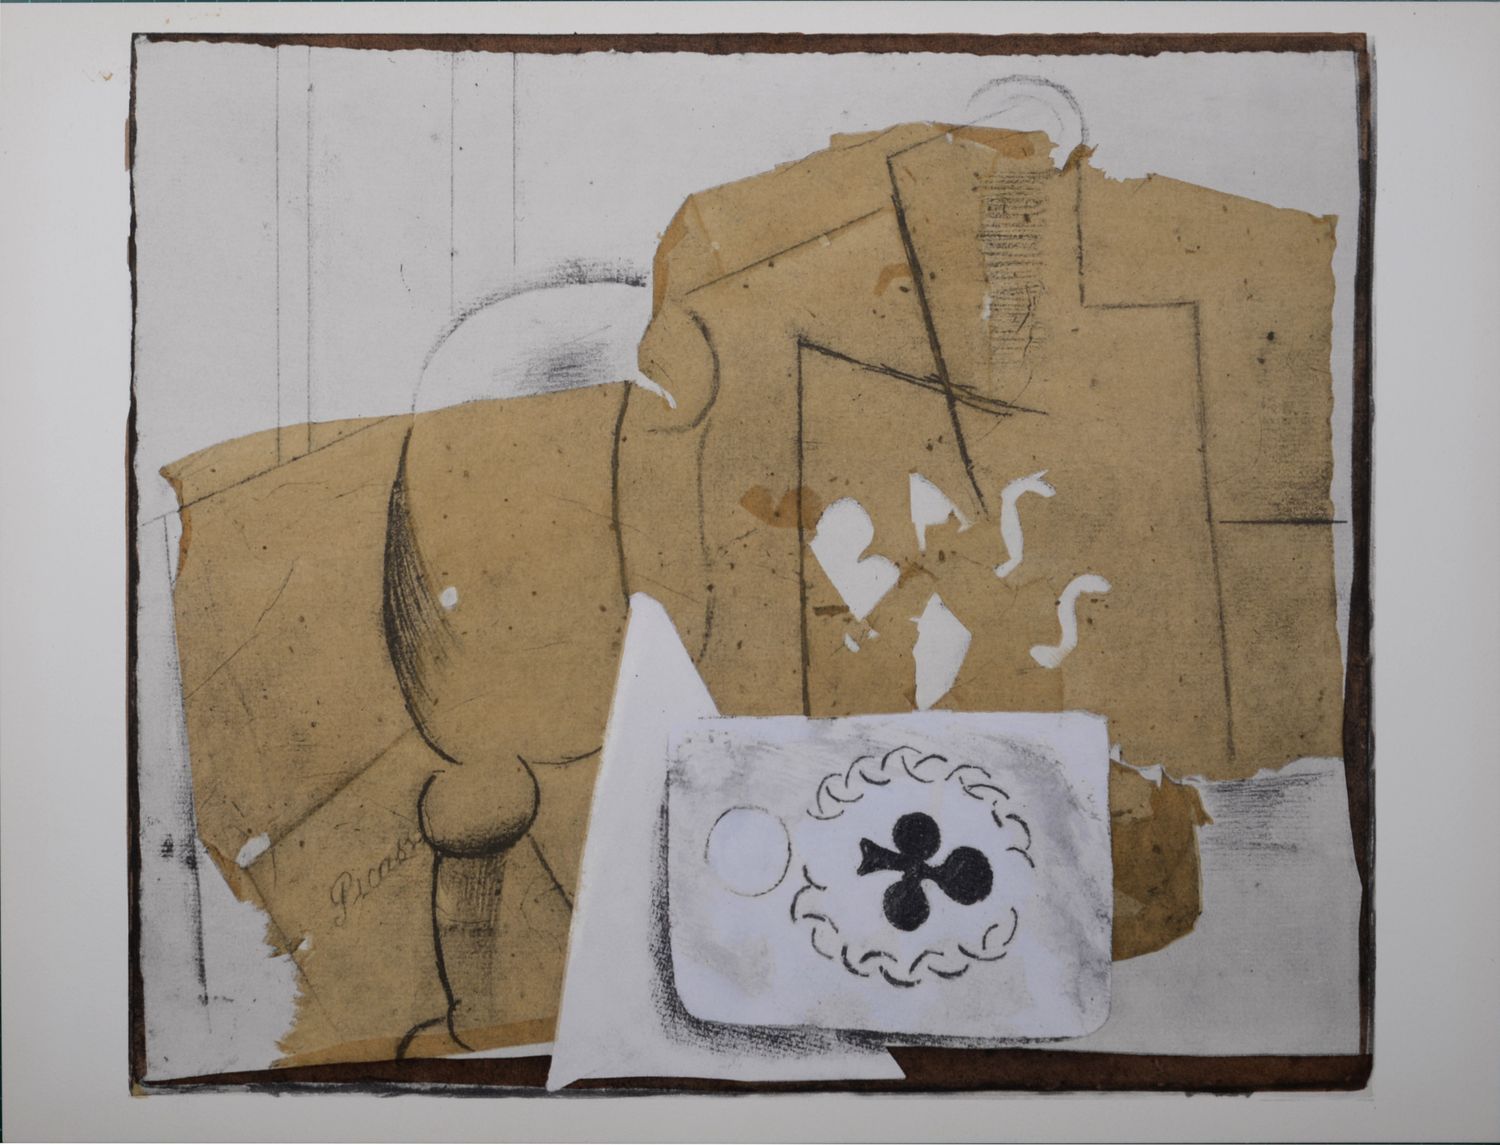 Pablo PICASSO Picasso (Après)

Bouteille, verre et cartes, 1962

Pochoir (lithog&hellip;